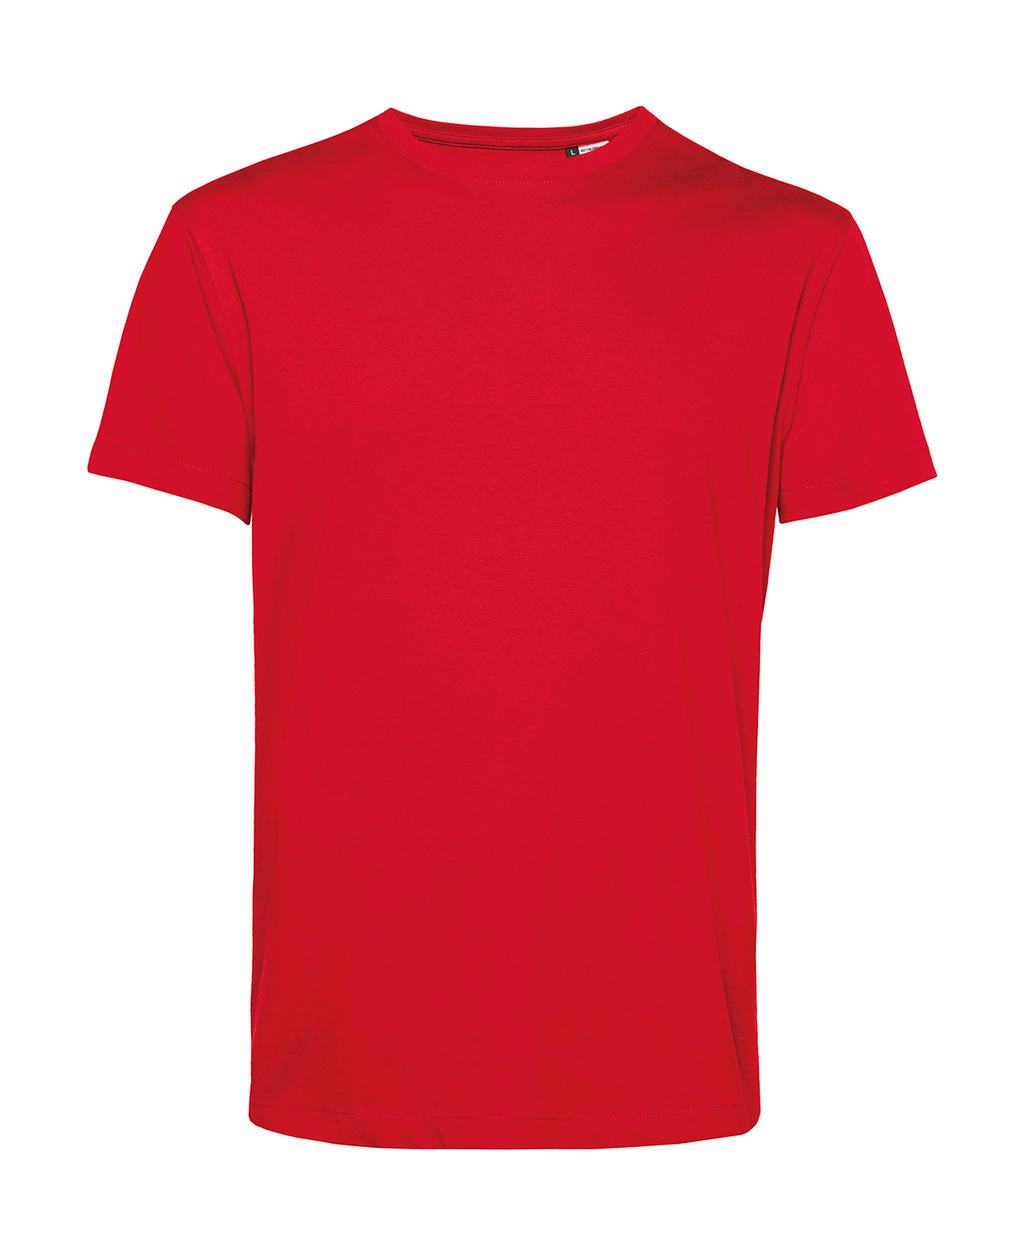 Tričko BC Organic Inspire E150 - červené, XL